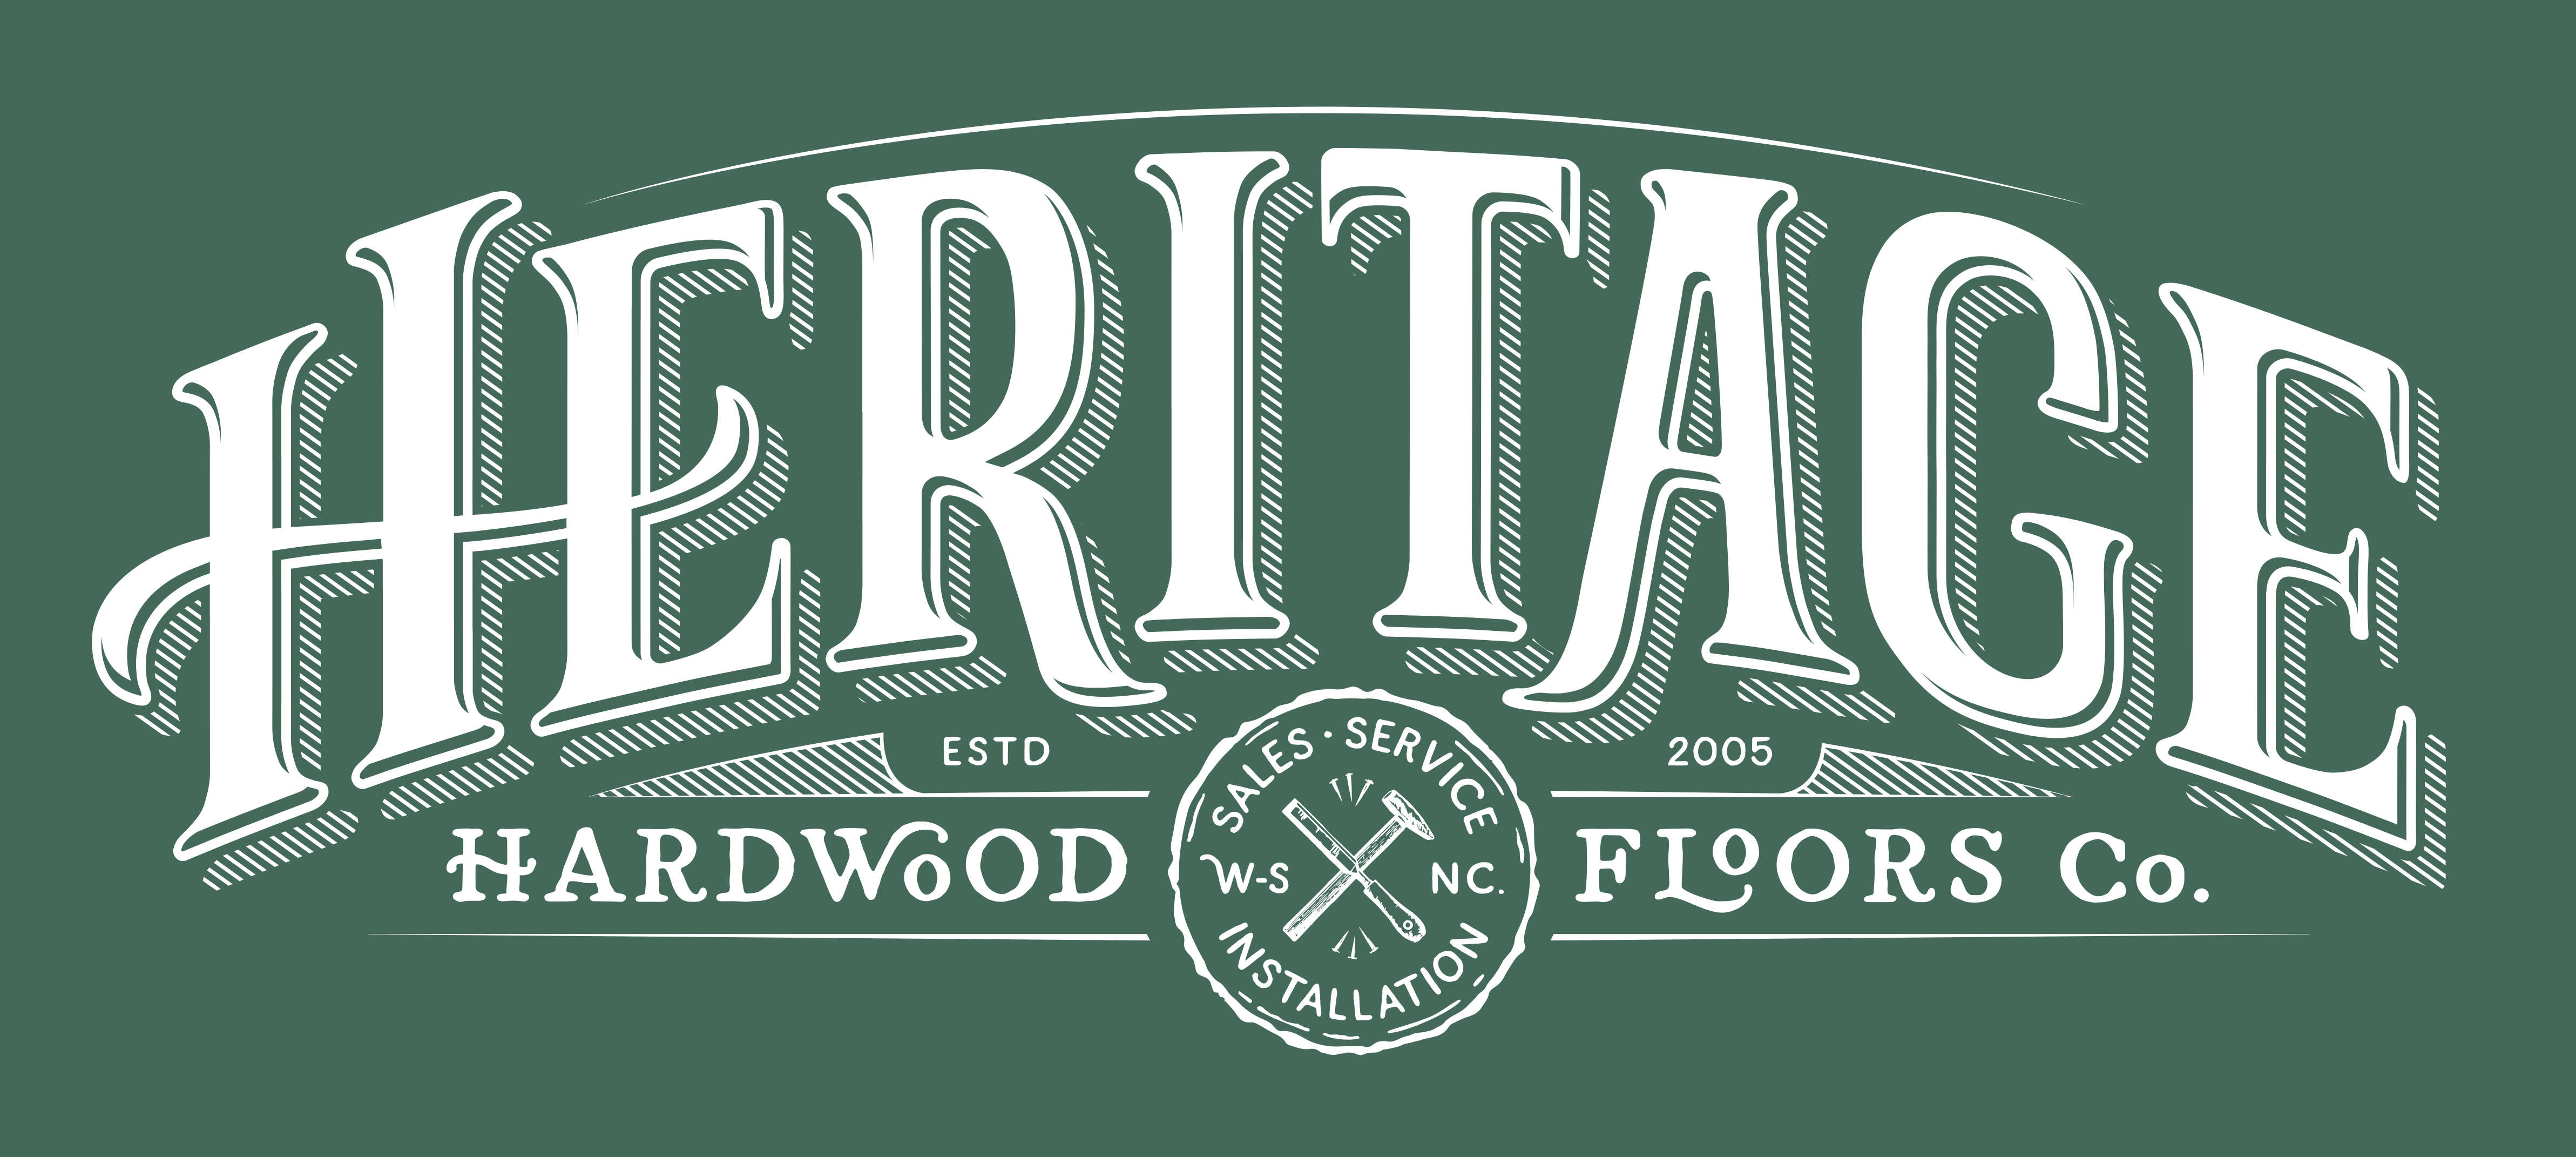 Heritage Hardwood Floors, LLC Logo